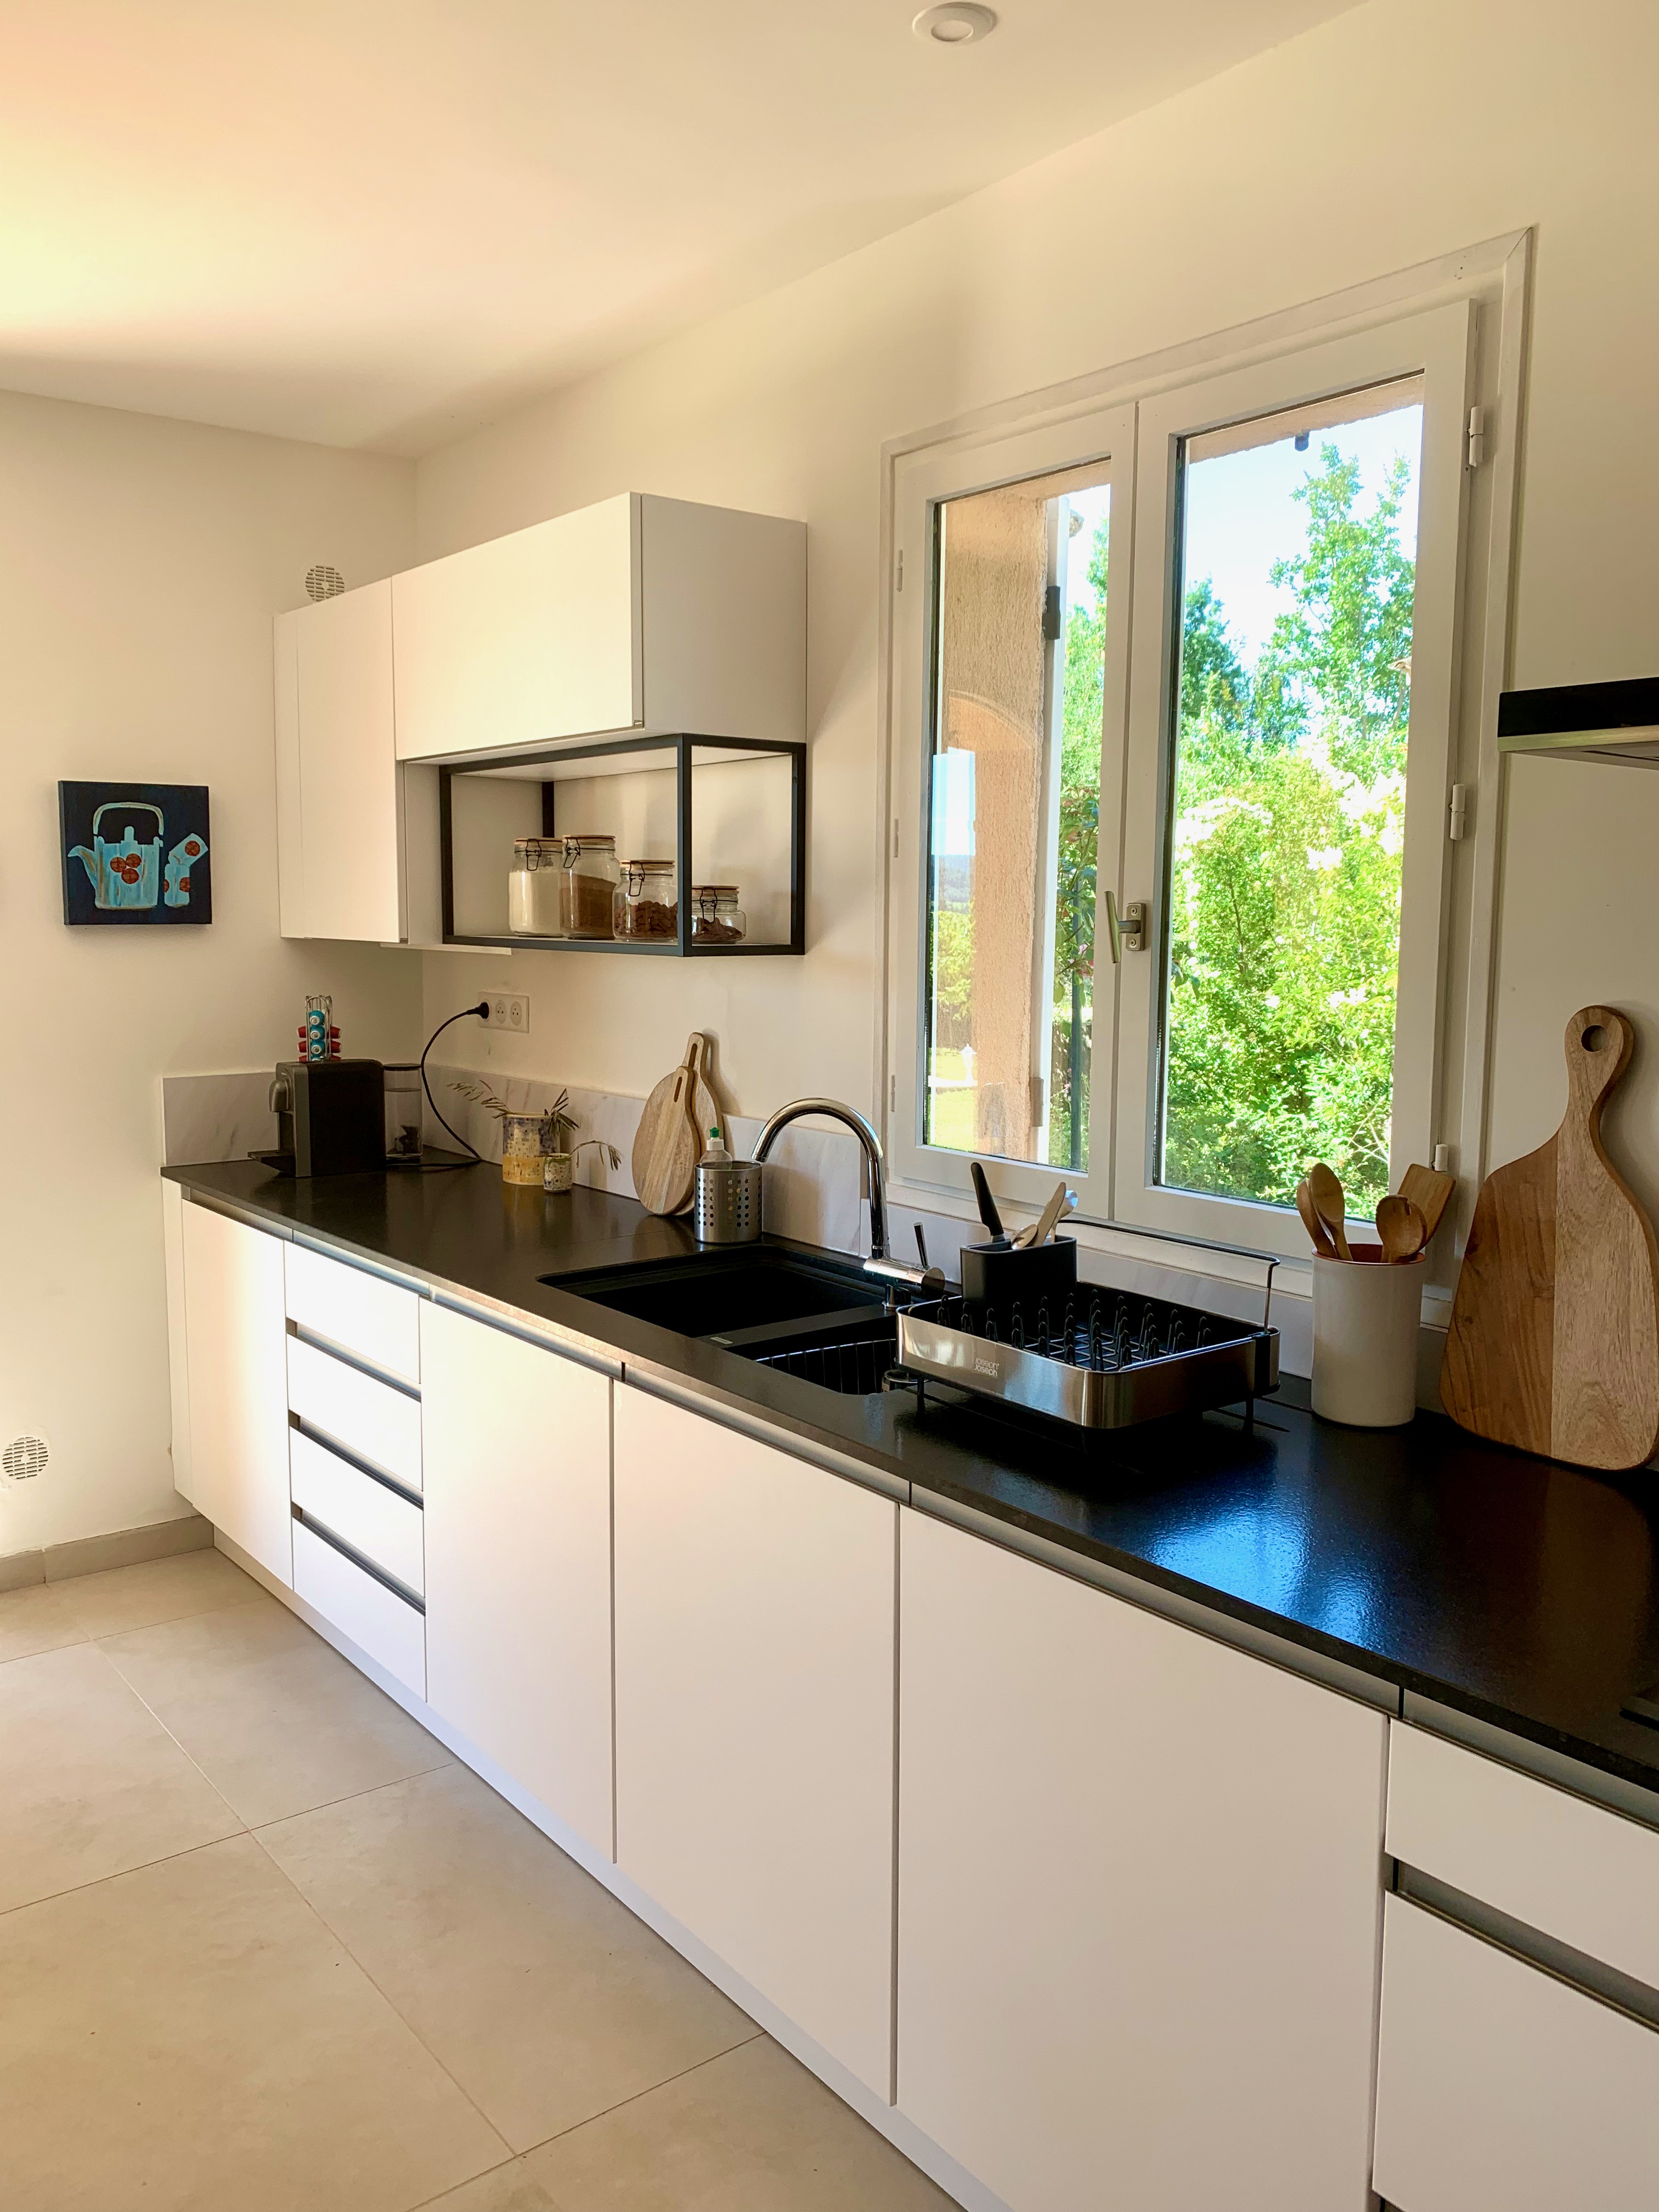 cuisine blanche et noire, cuisine granit, meubles bas, cuisine étagère, rénovation, décoration intérieure